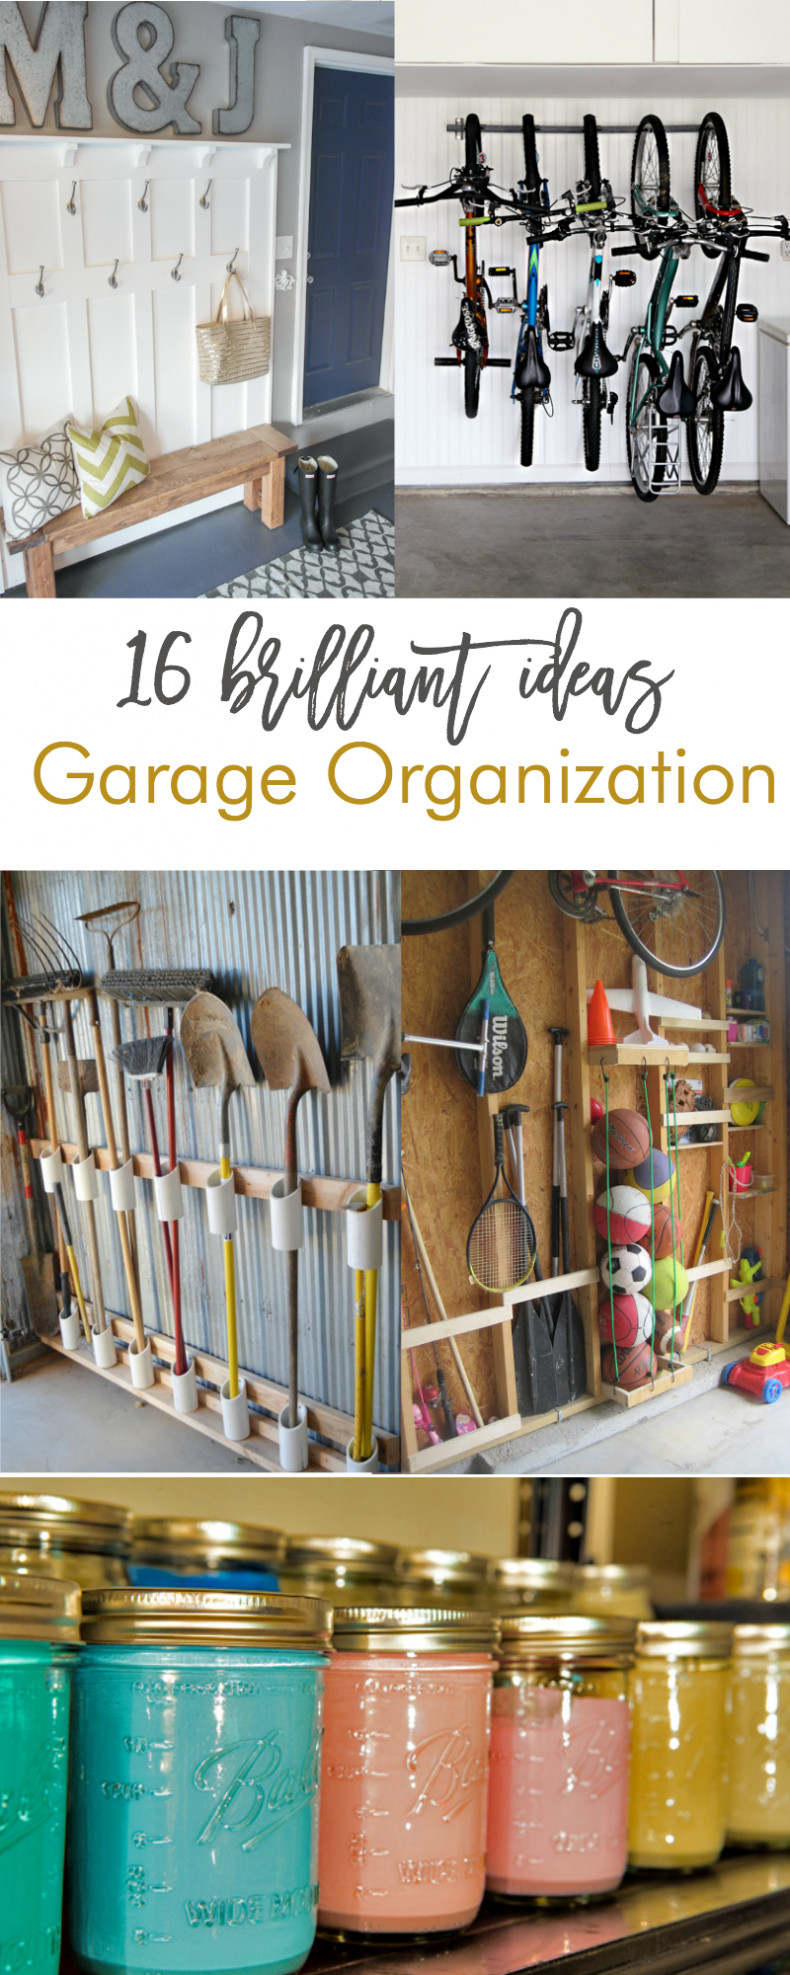 DIY Home Organizing Ideas
 16 Brilliant DIY Garage Organization Ideas